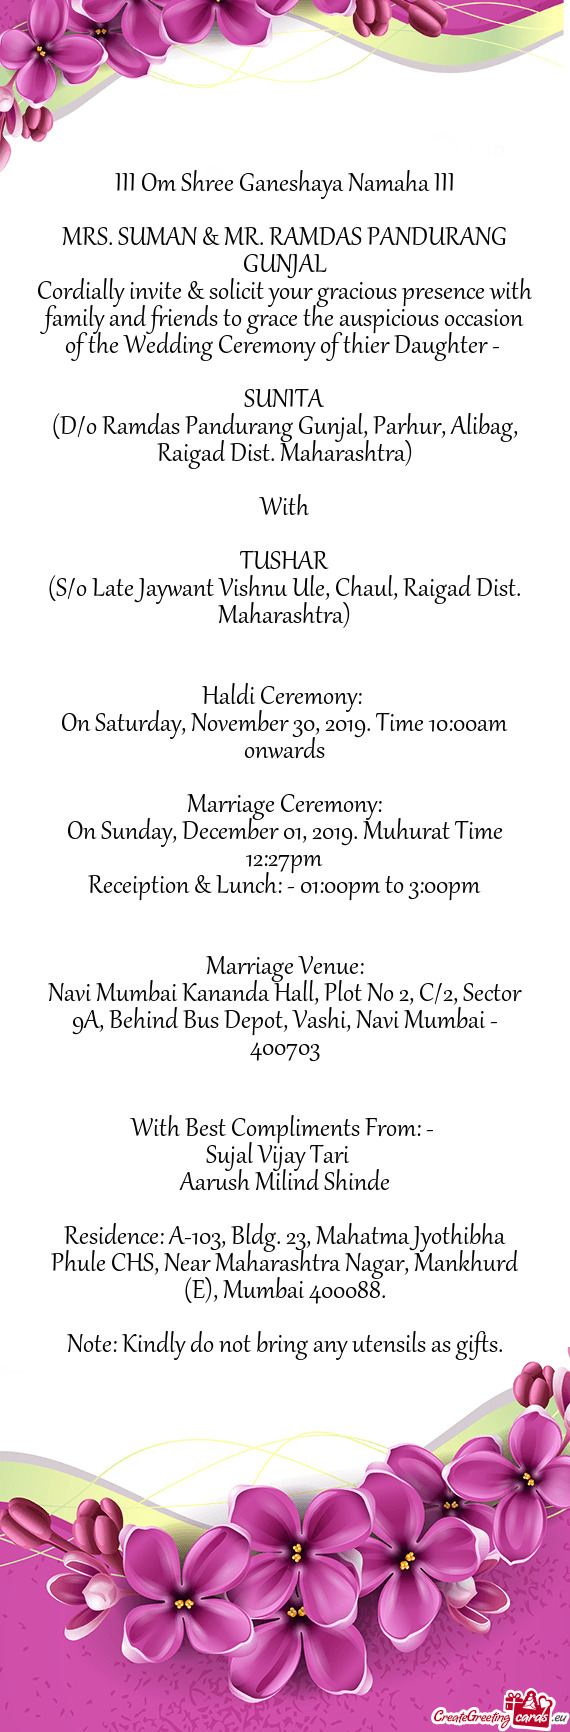 Haldi Ceremony: